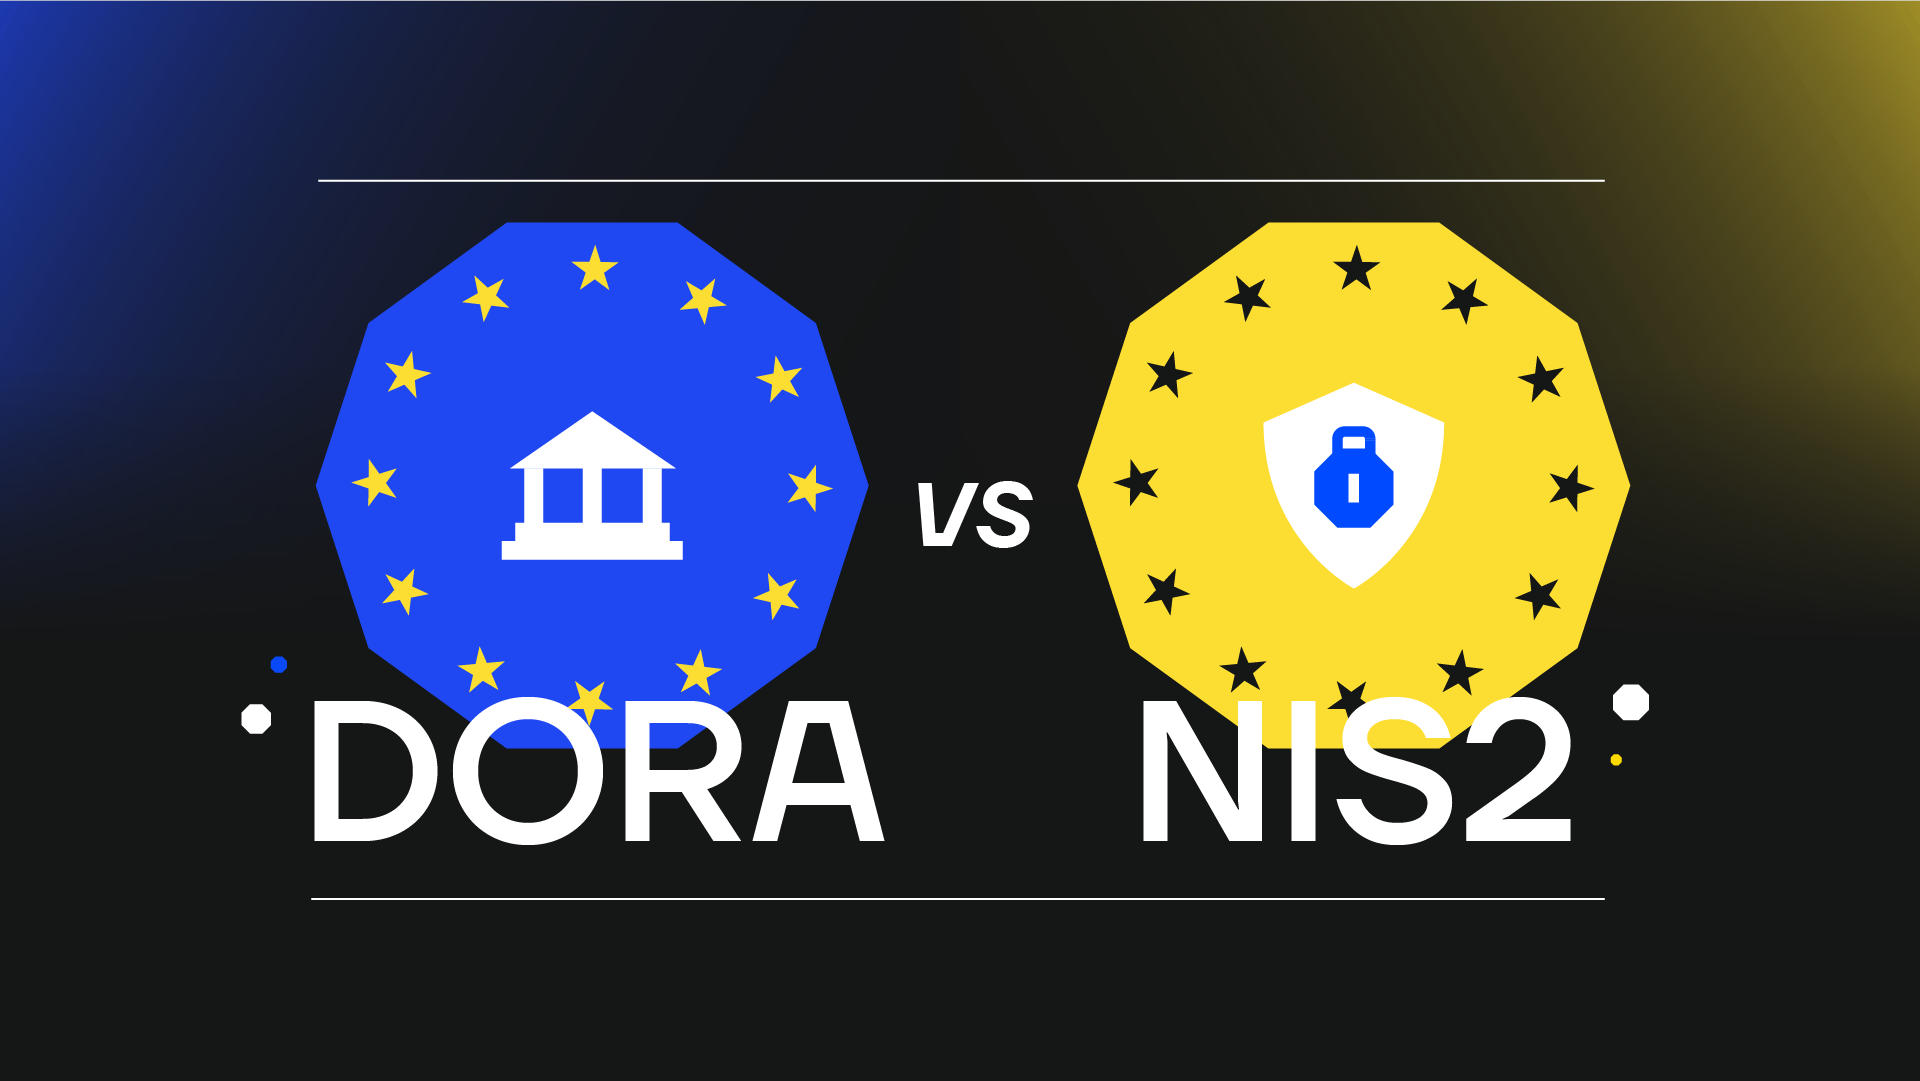 Visual DORA vs NIS2